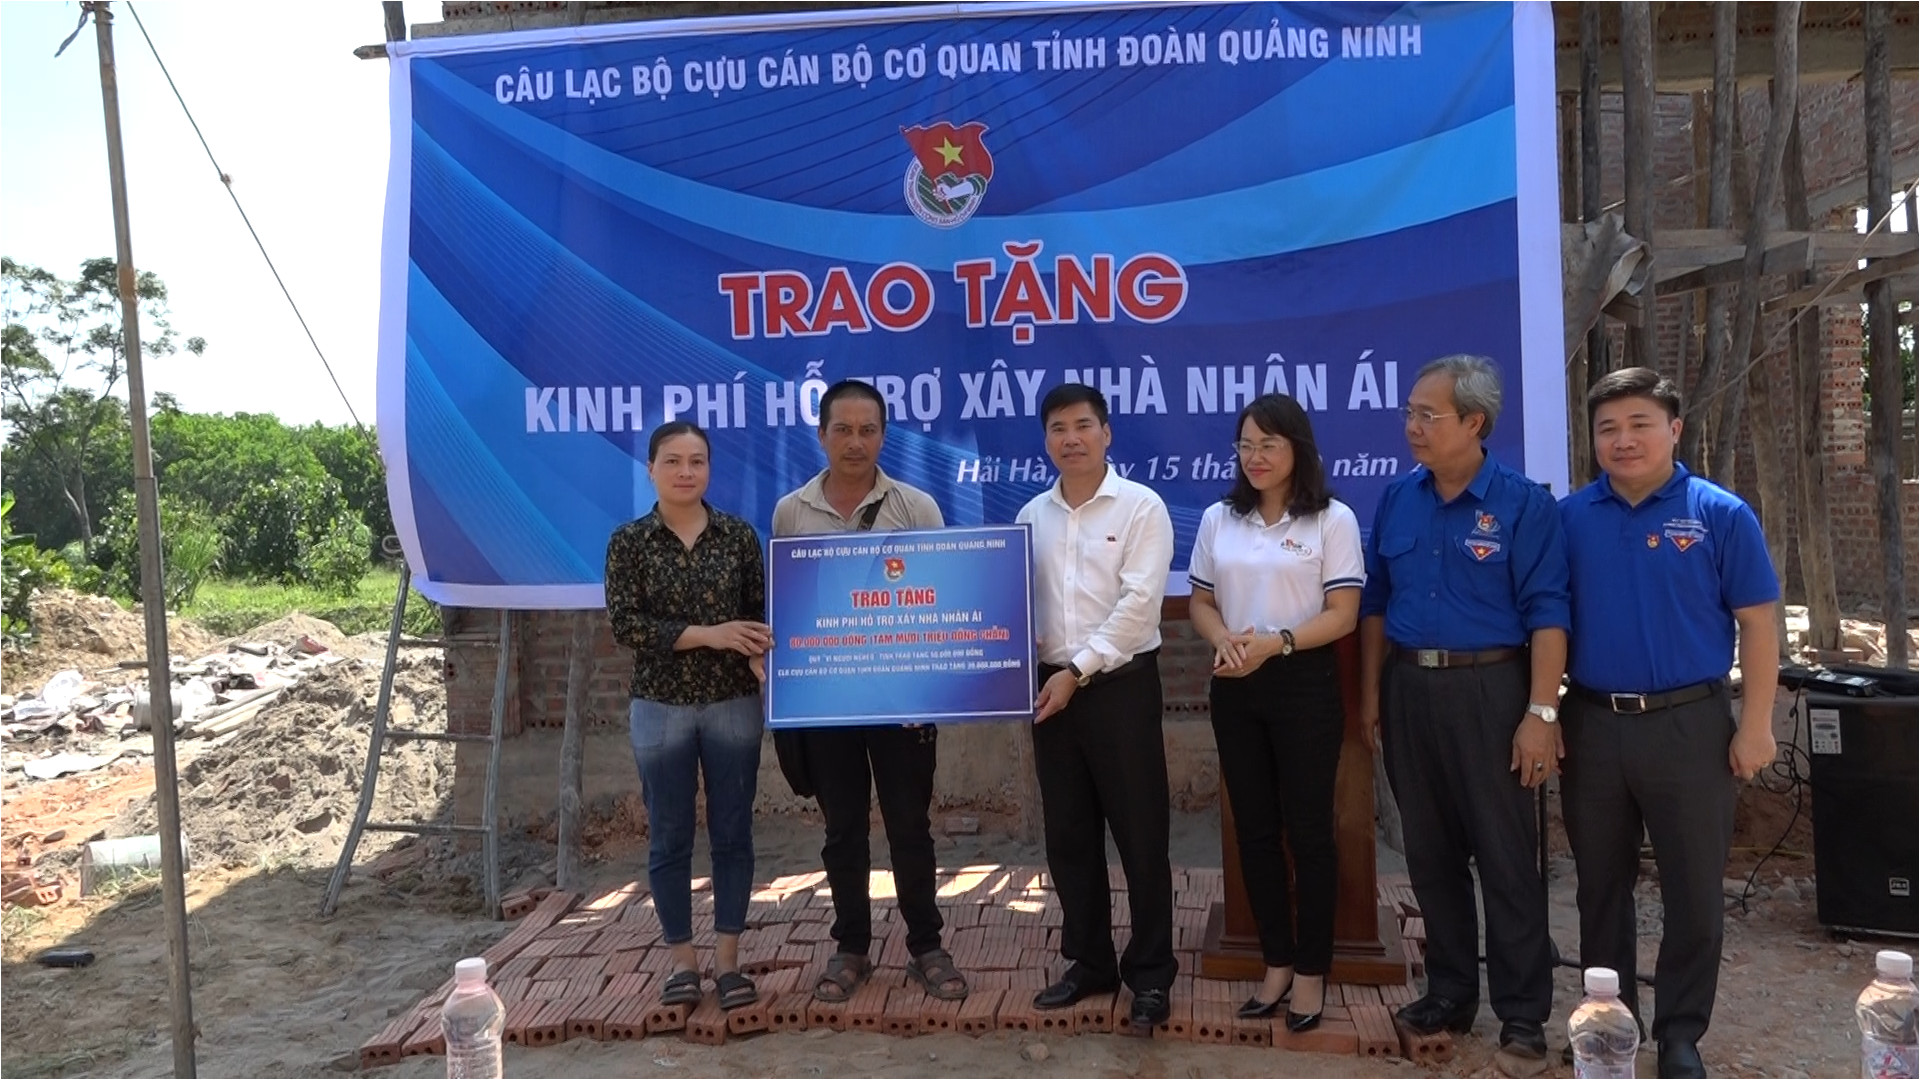 Câu lạc bộ Cựu cán bộ cơ quan Tỉnh đoàn Quảng Ninh trao kinh phí hỗ trợ xây nhà nhân ái cho hộ khó khăn ở xã Quảng Chính, huyện Hải Hà.